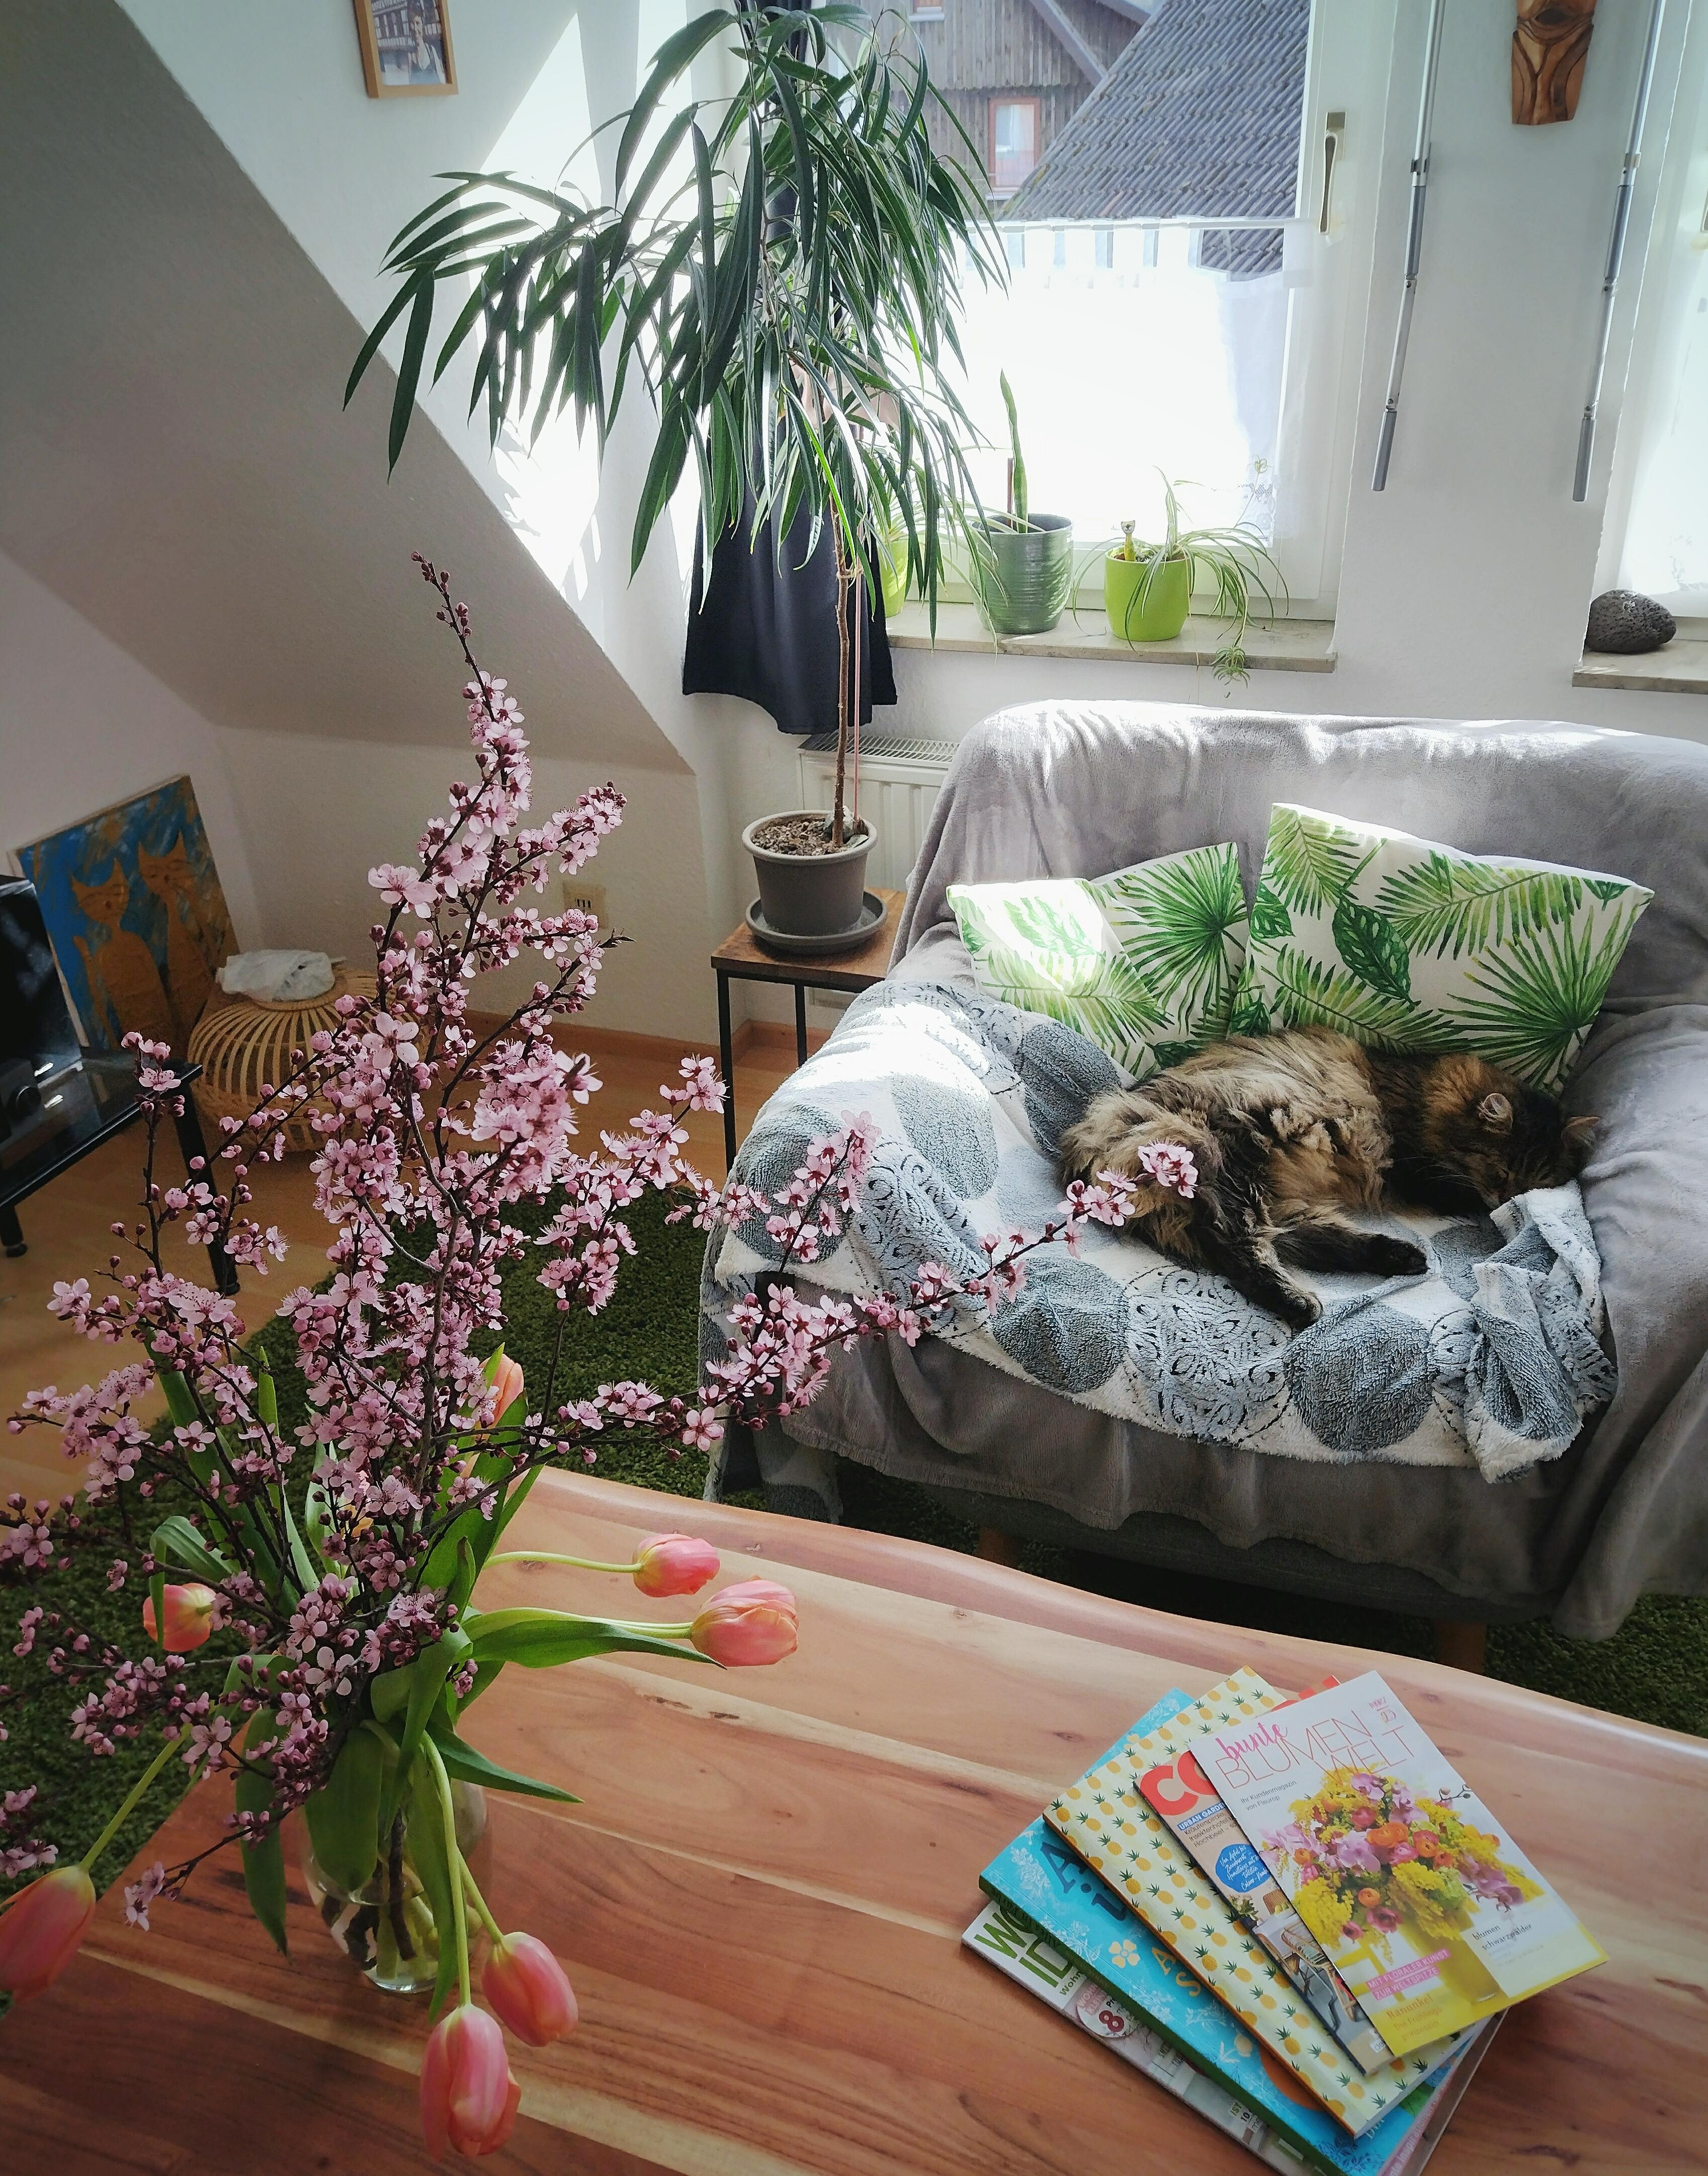 #wohnzimmer #katze #sessel #couchtisch #zweige #tulpen #pflanzenliebe #frischeblumen #blumenliebe #tierliebe #pflanzen